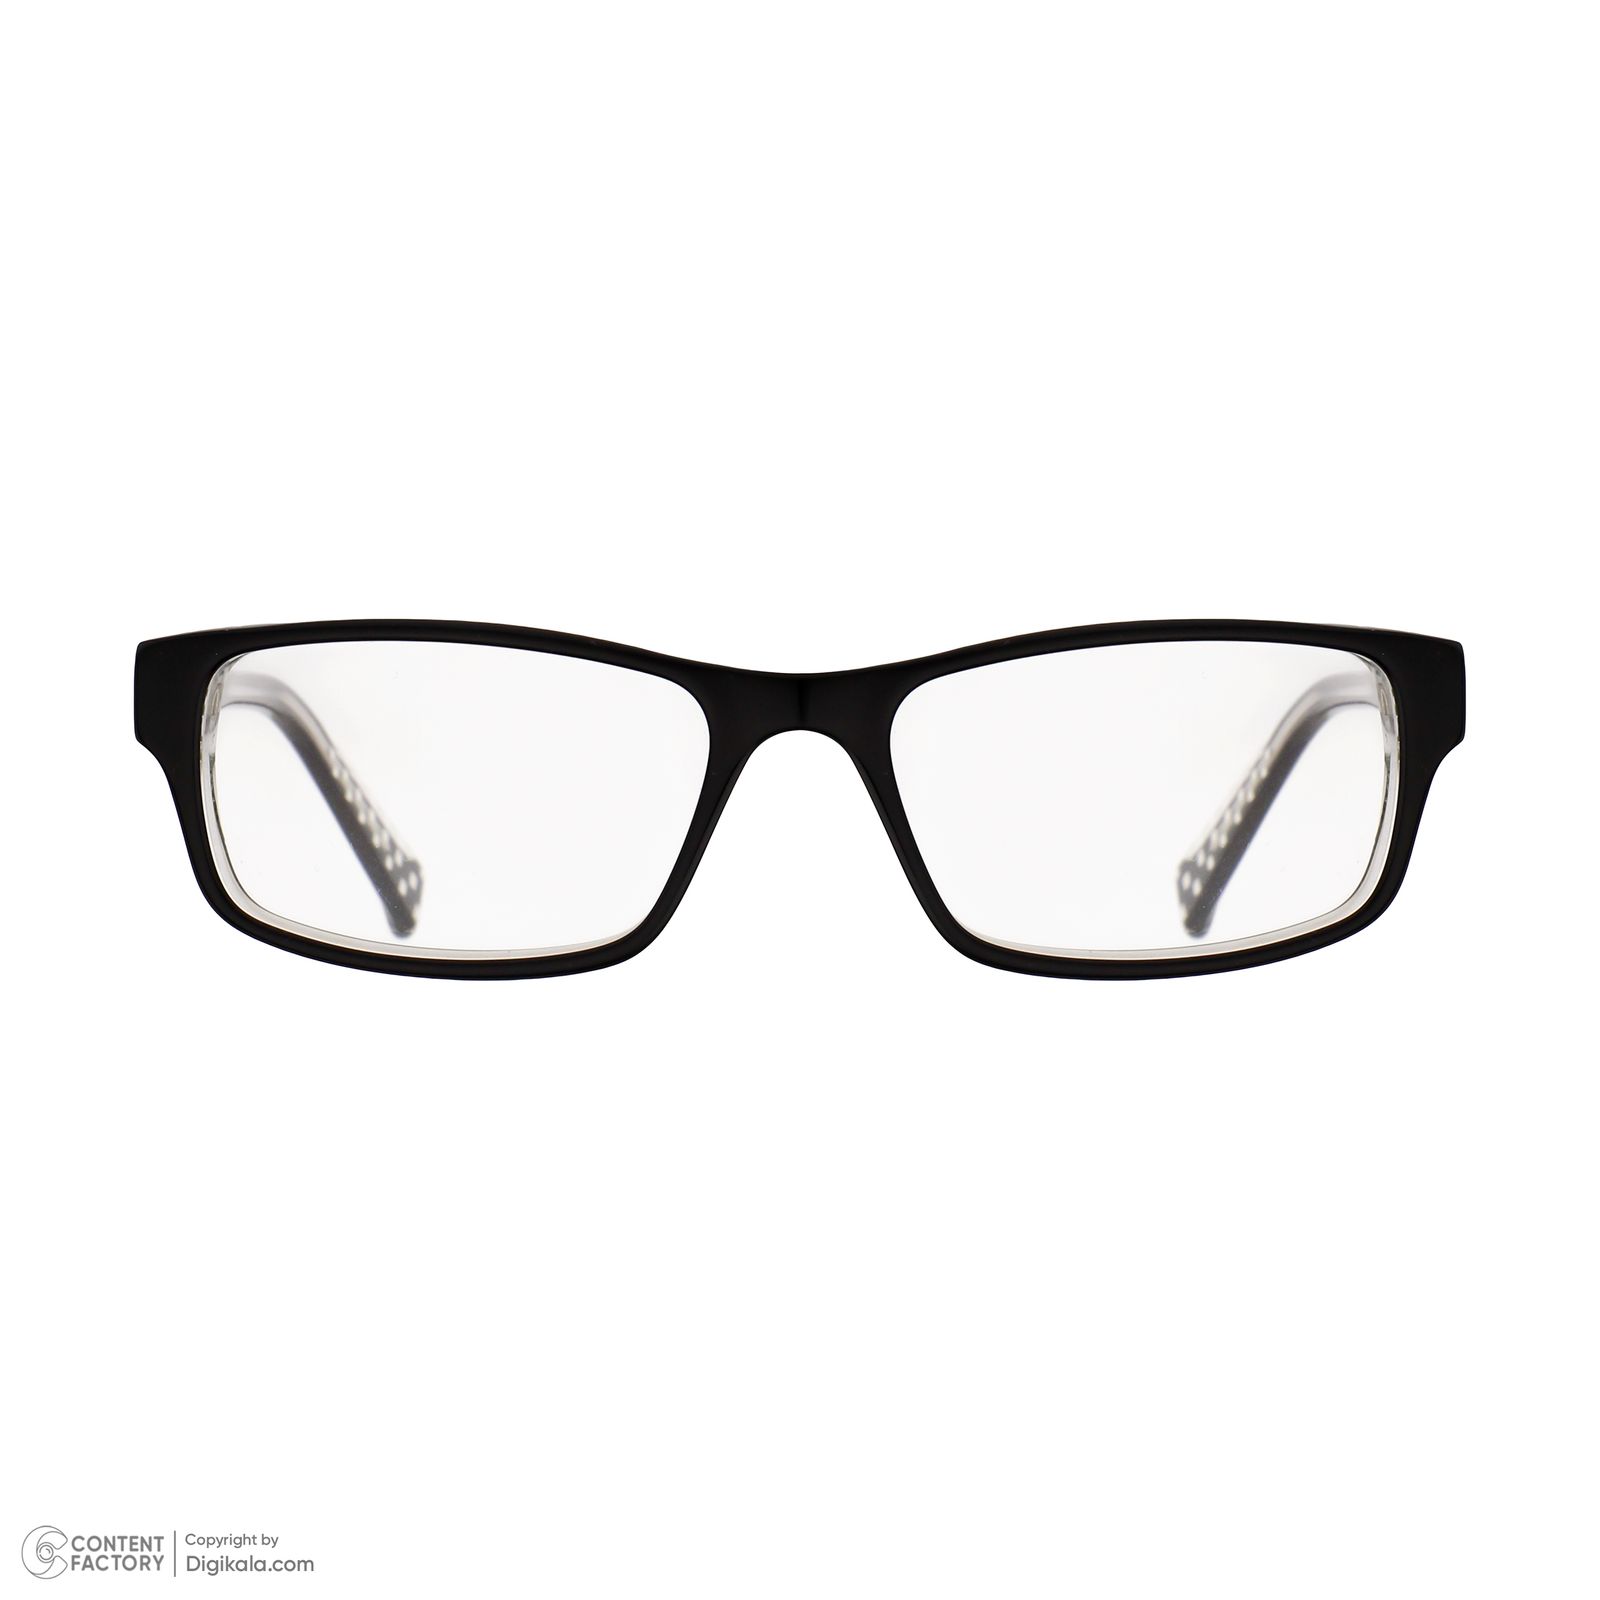 فریم عینک طبی نایک مدل 5507-1 -  - 6